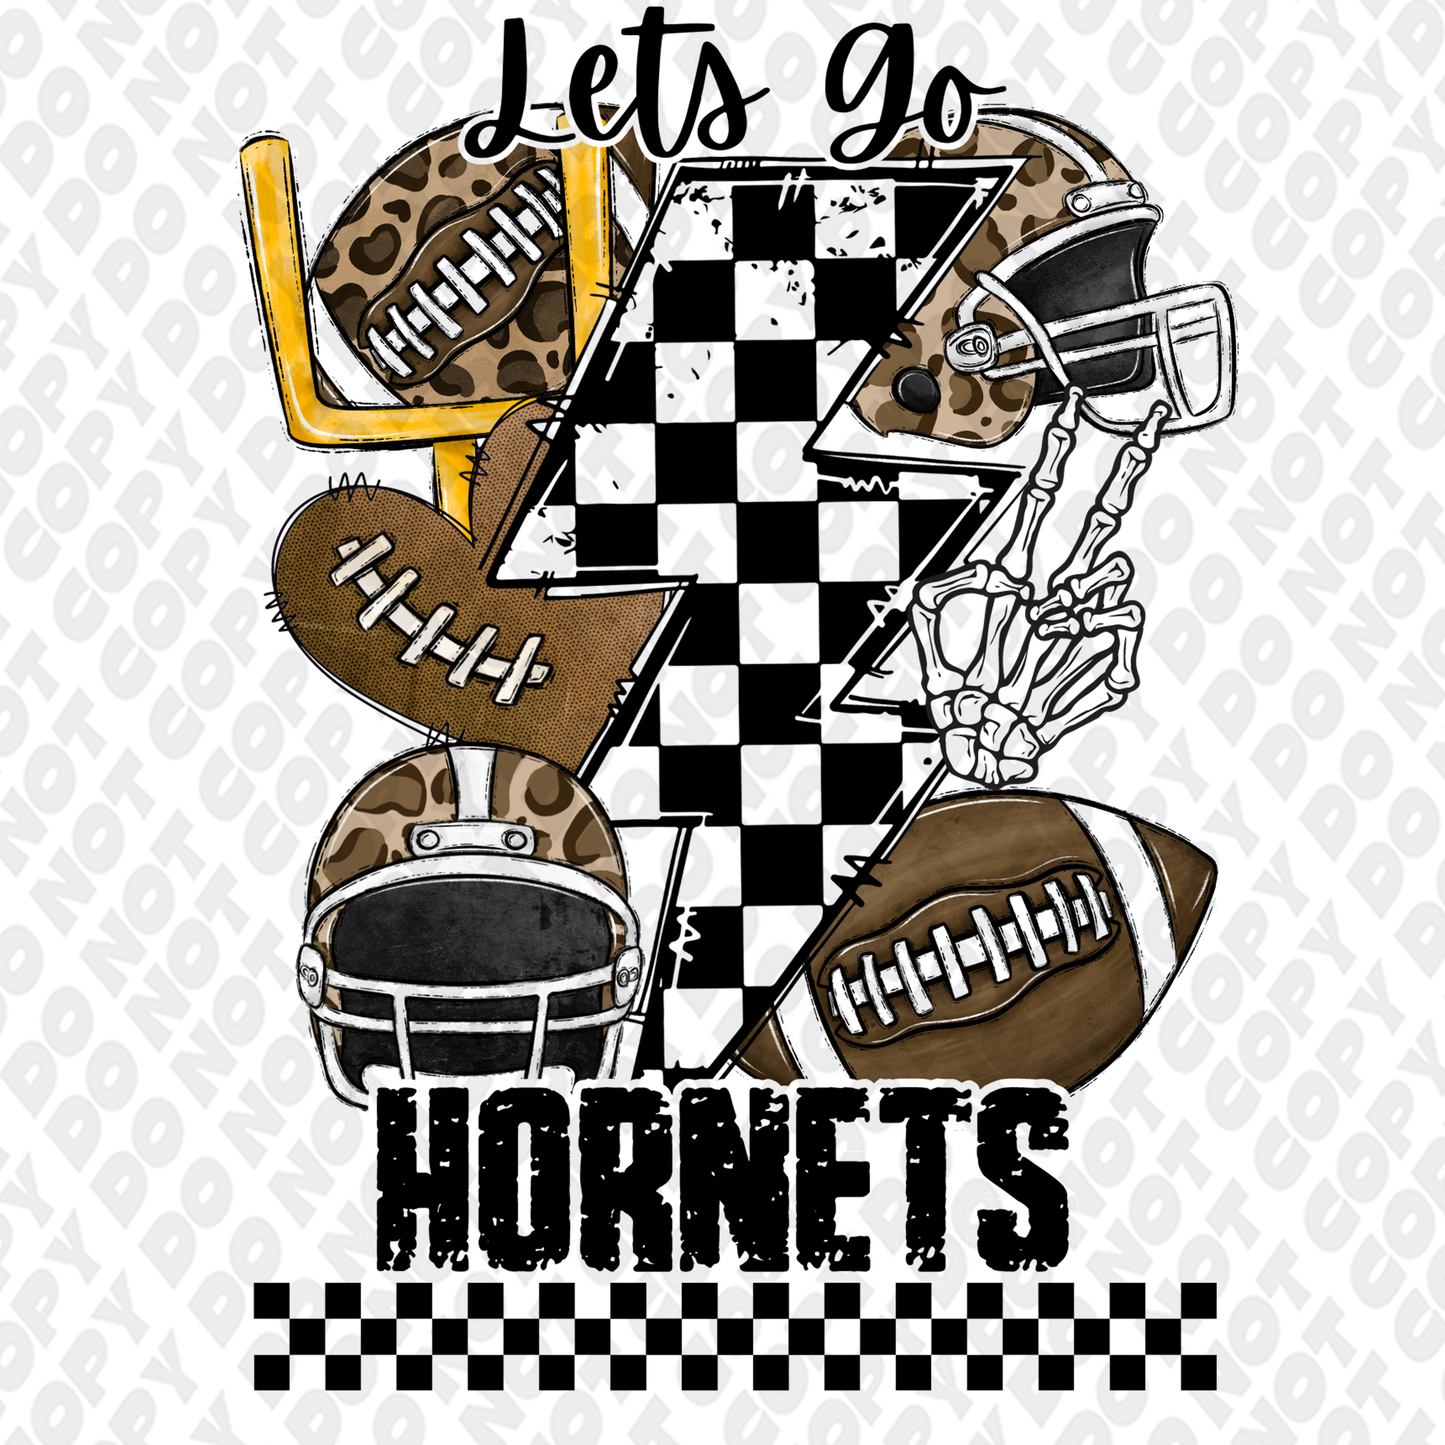 Let's go Hornets